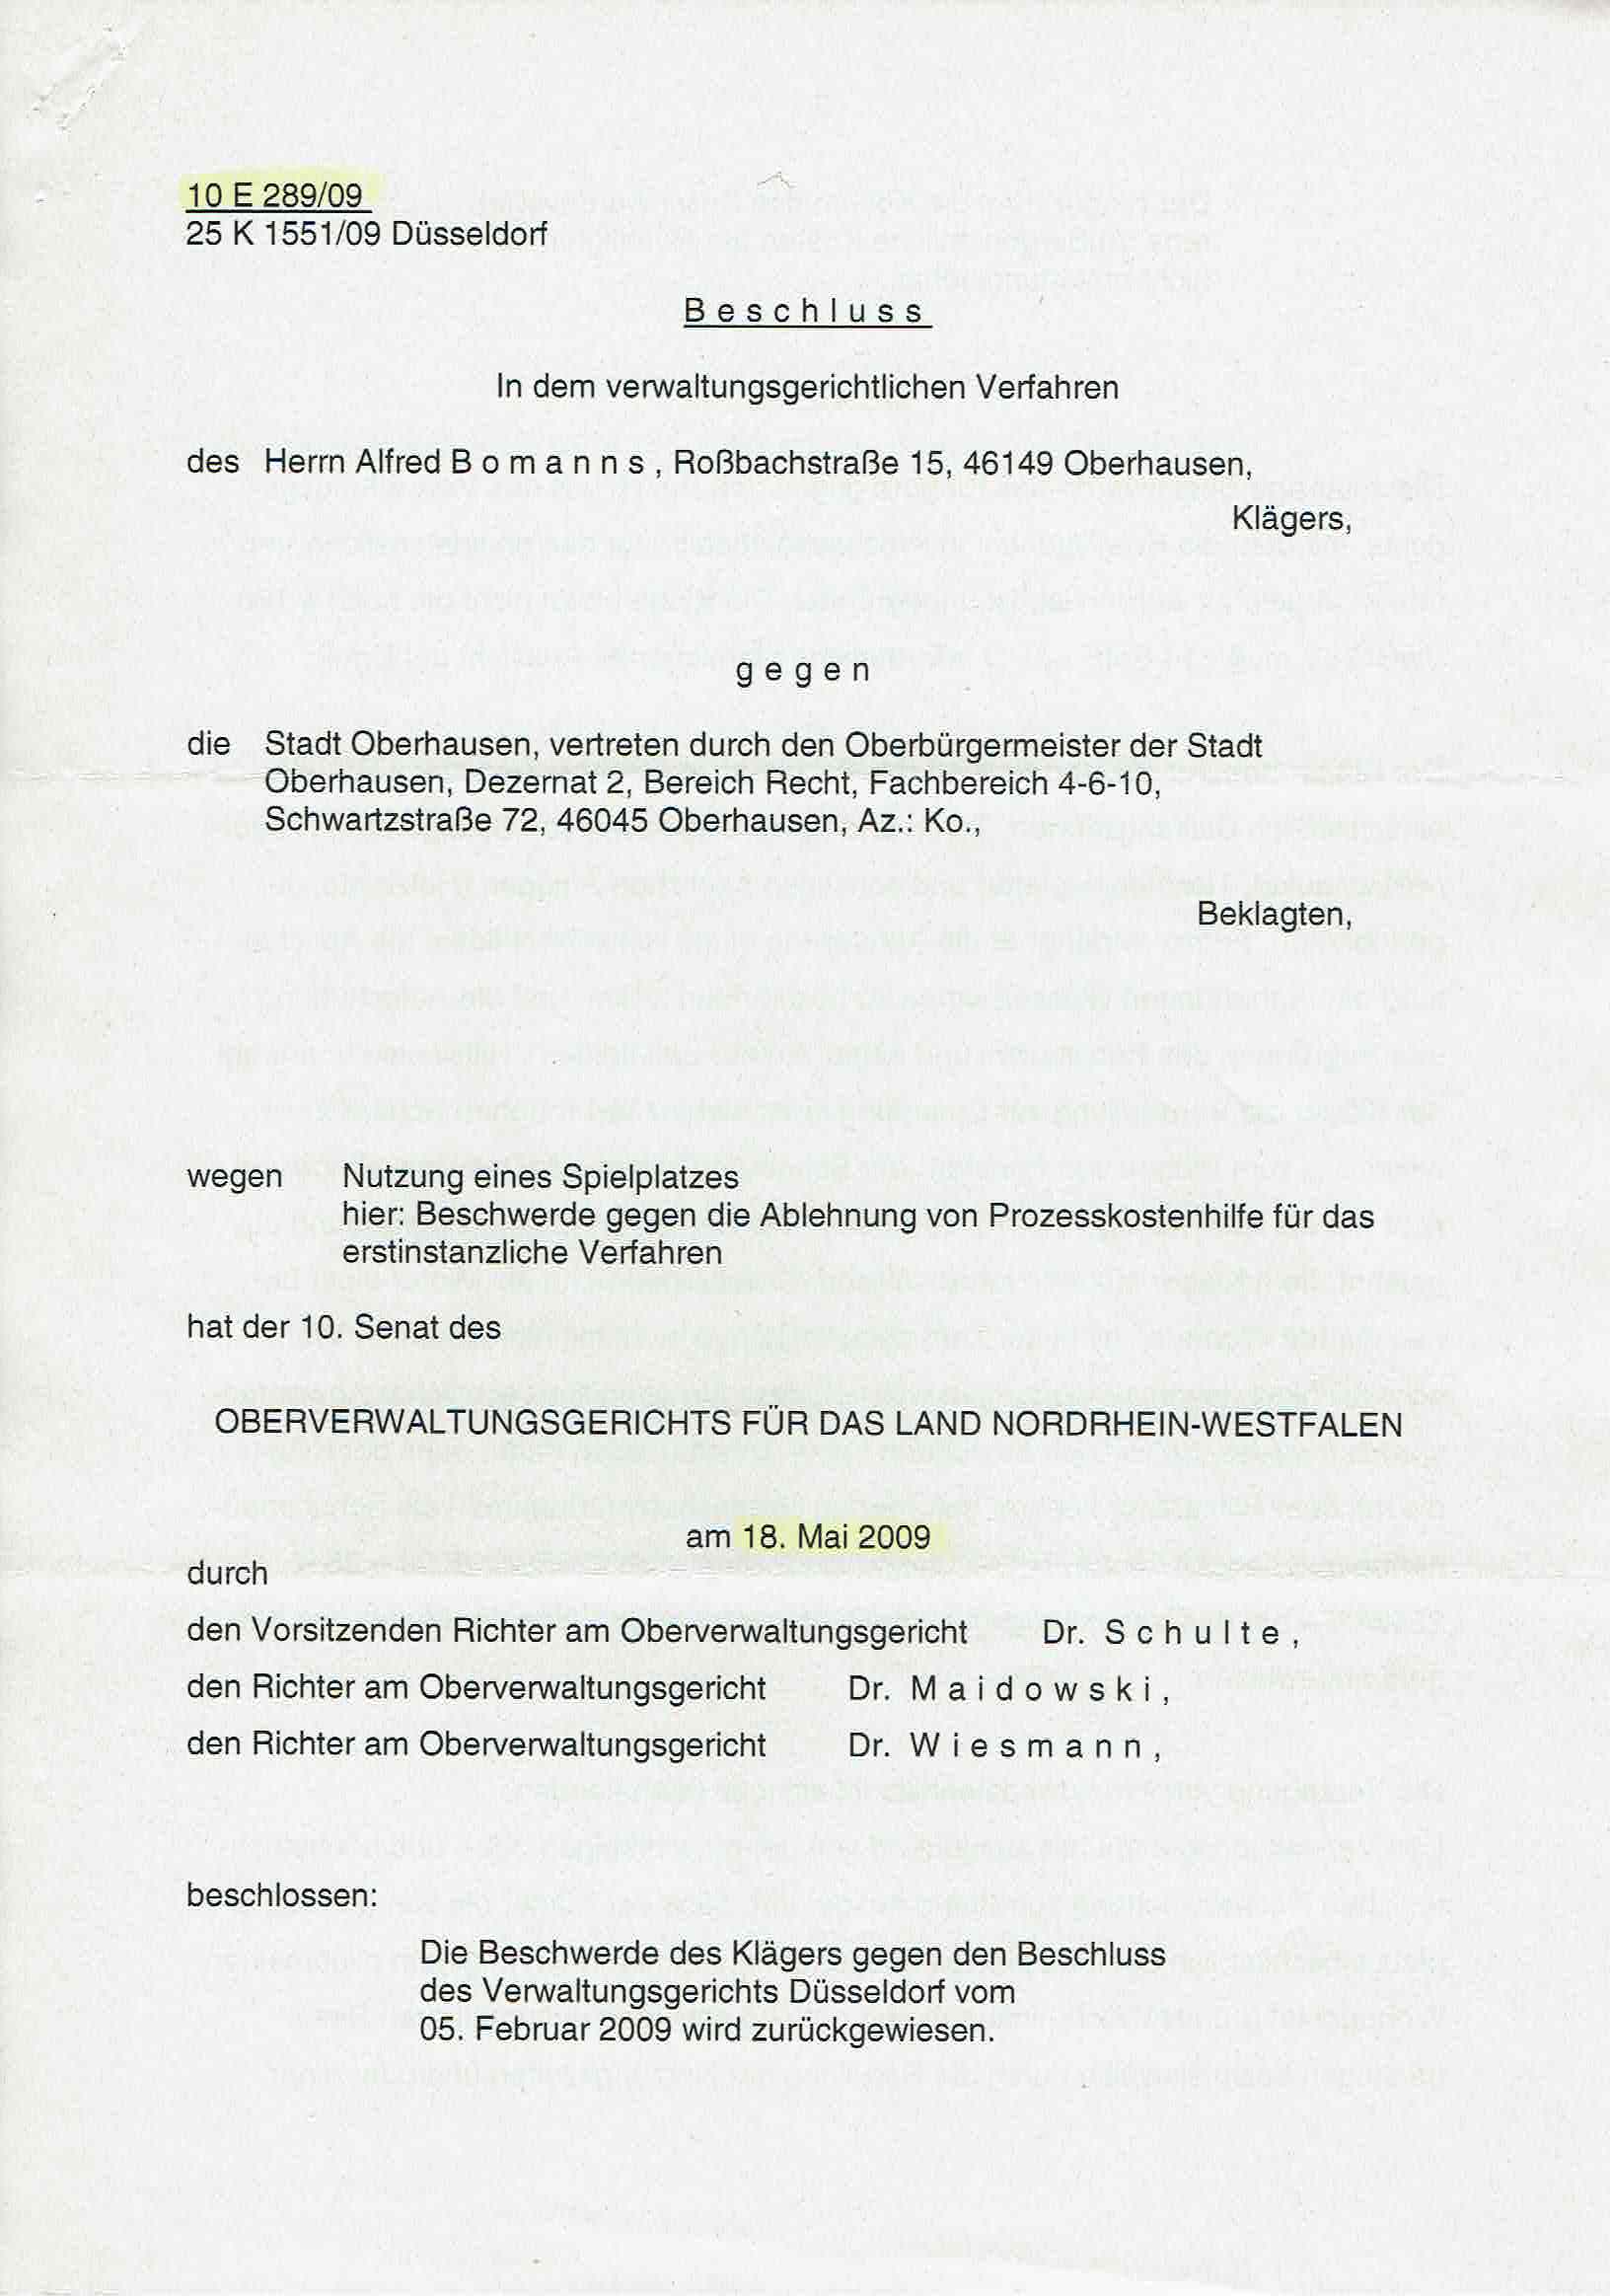 Bescheid der Richter Dr. Bernhard Schulte alias Bernd H. Schulte, Richter Dr. Ulrich Maidowski, Richter Dr. Martin Wiesmann über die Ablehnung von Prozeßkostenhilfe vom 18.05.2009, S. 1